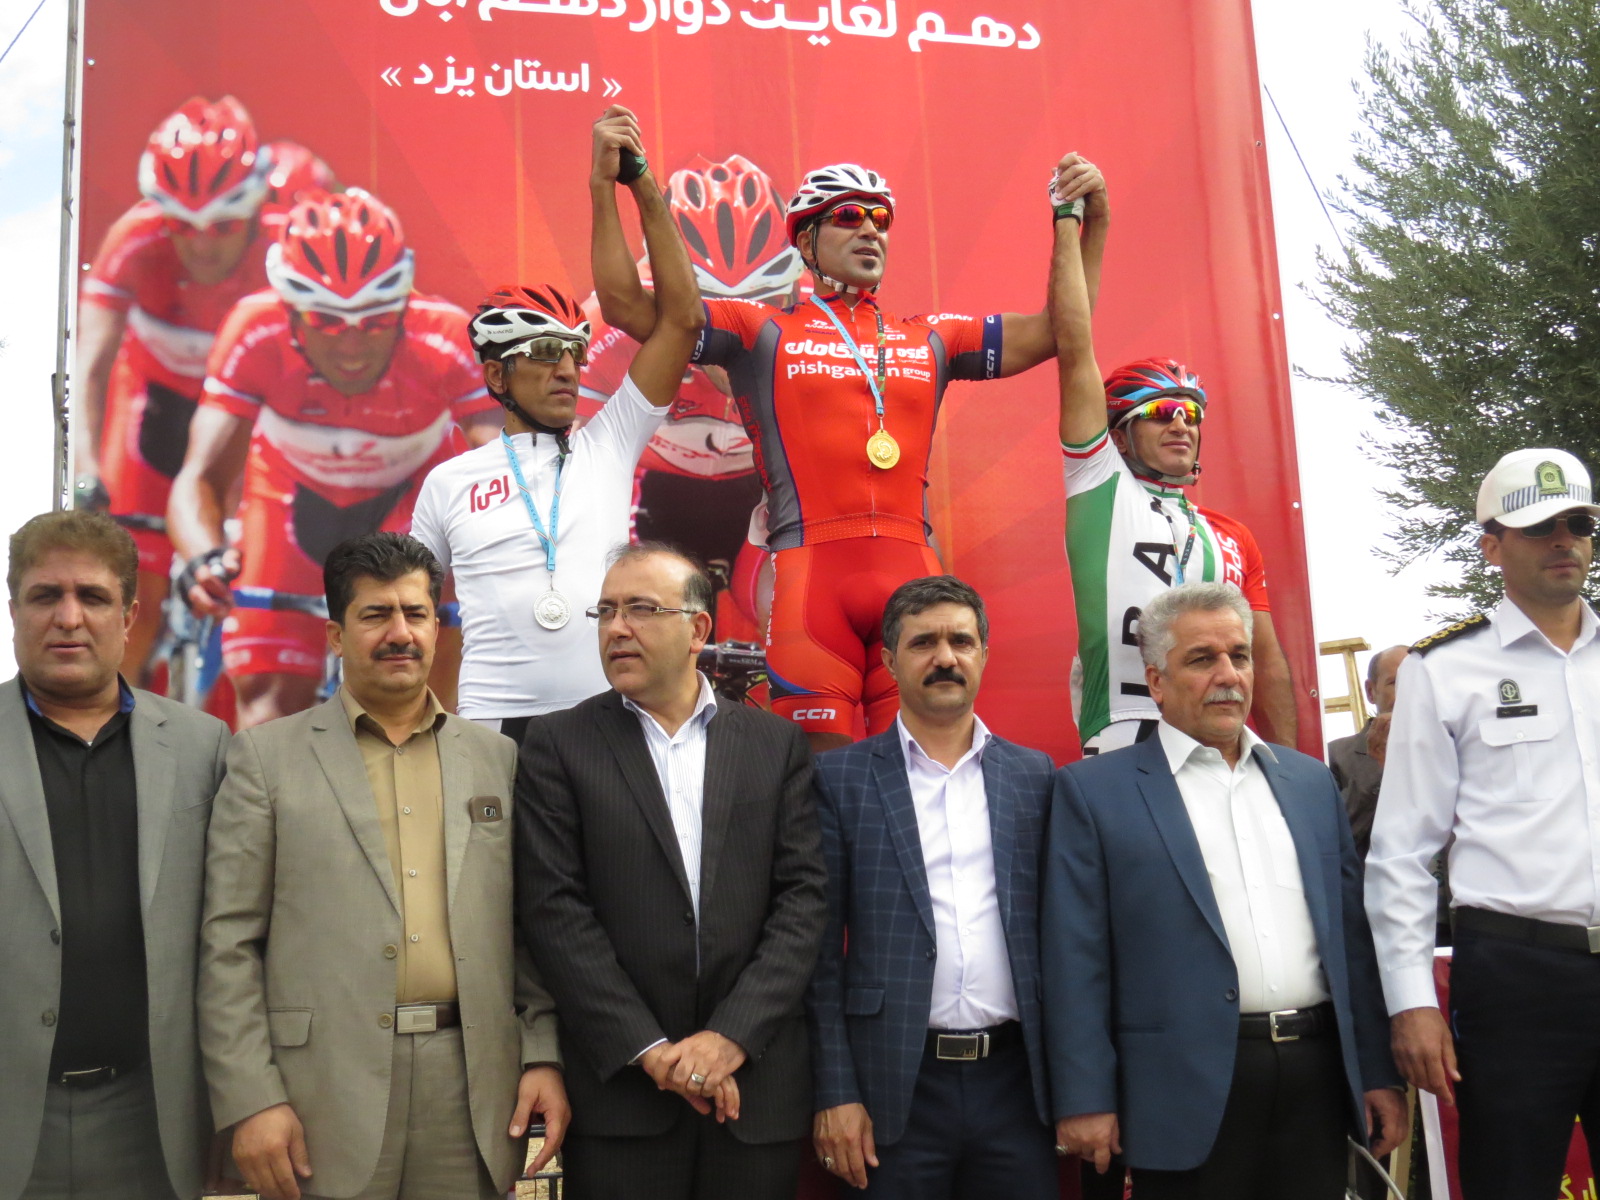 مسابقات دوچرخه سواری قهرمانی کارگران کشور با قهرمانی تیم یزد به کار خود پایان داد.